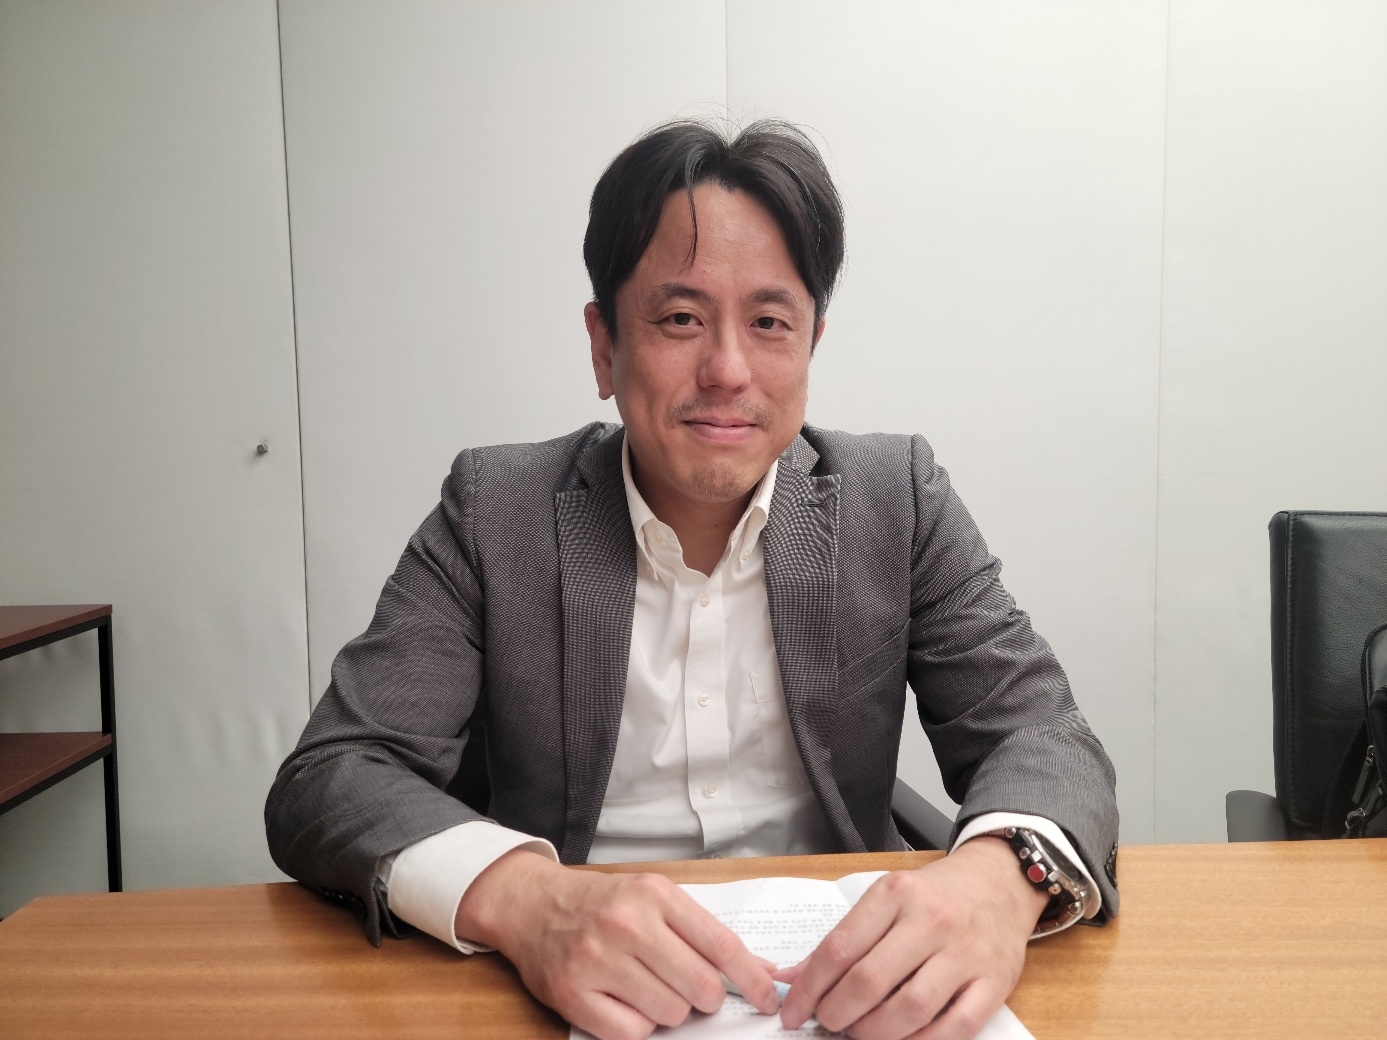 일본에서 첫 한국 국방정책에 관한 책을 쓴 이토 고타로 캐논글로벌전략연구소(CIGS) 주임연구원이 5일 도쿄 지요다구 마루노우치의 사무실에서 인터뷰하고 있다.